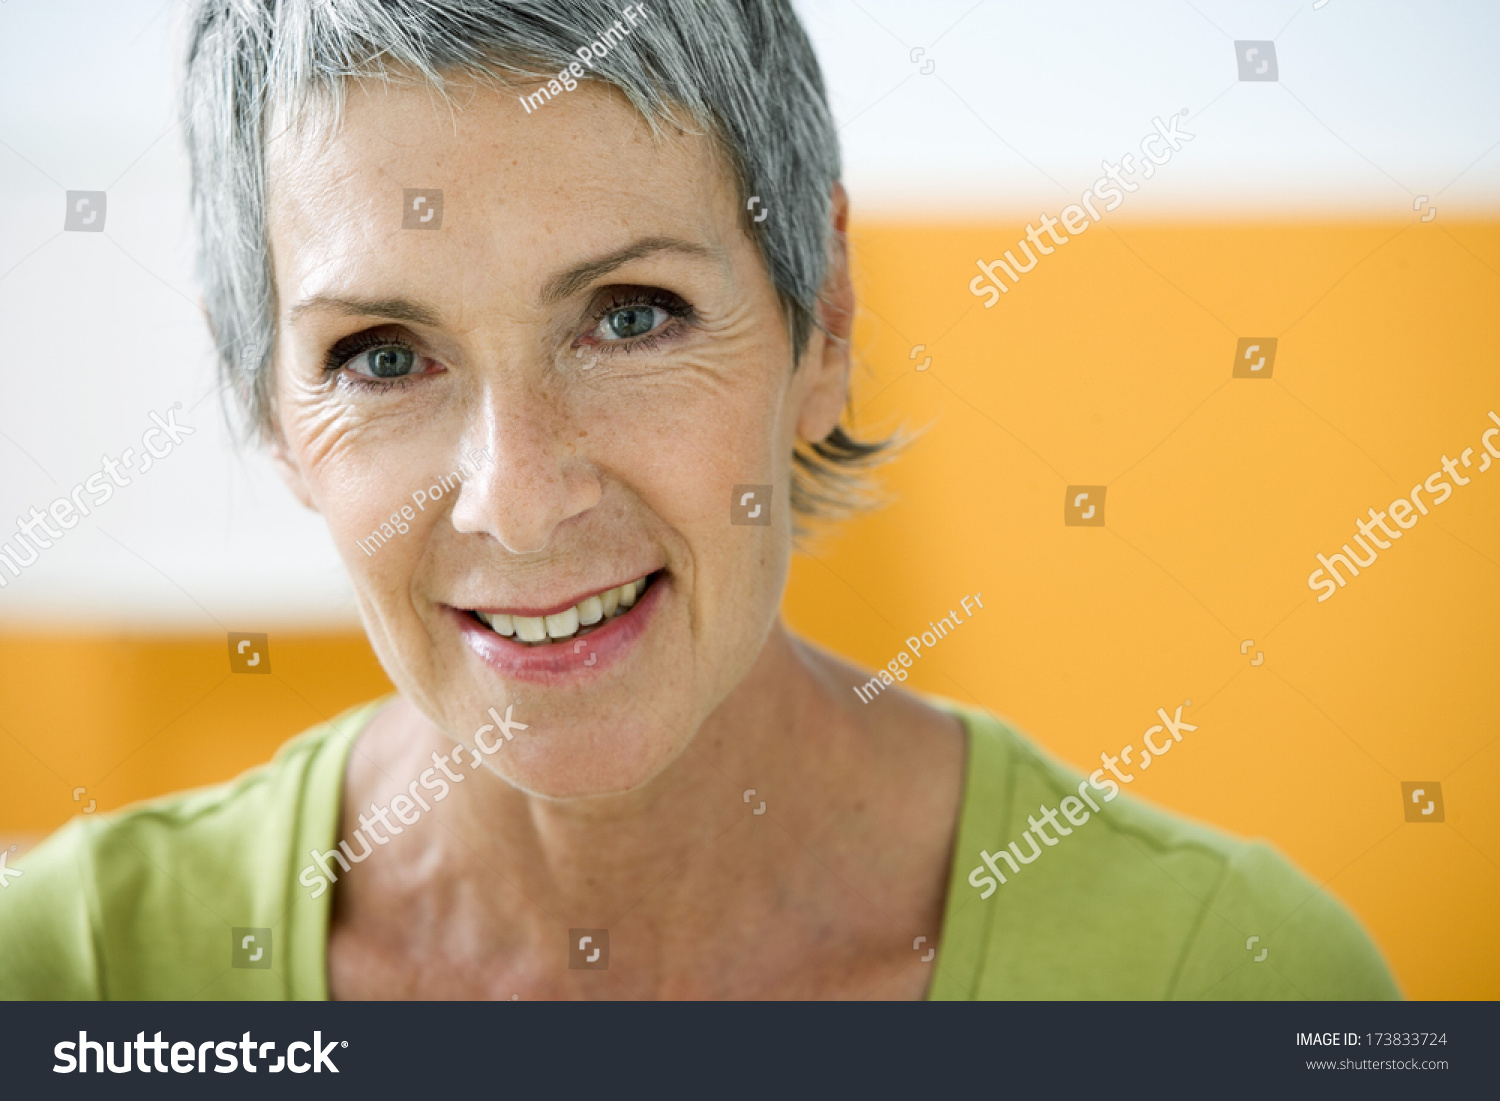 Portrait Woman In 50s Stock Photo 173833724 : Shutterstock